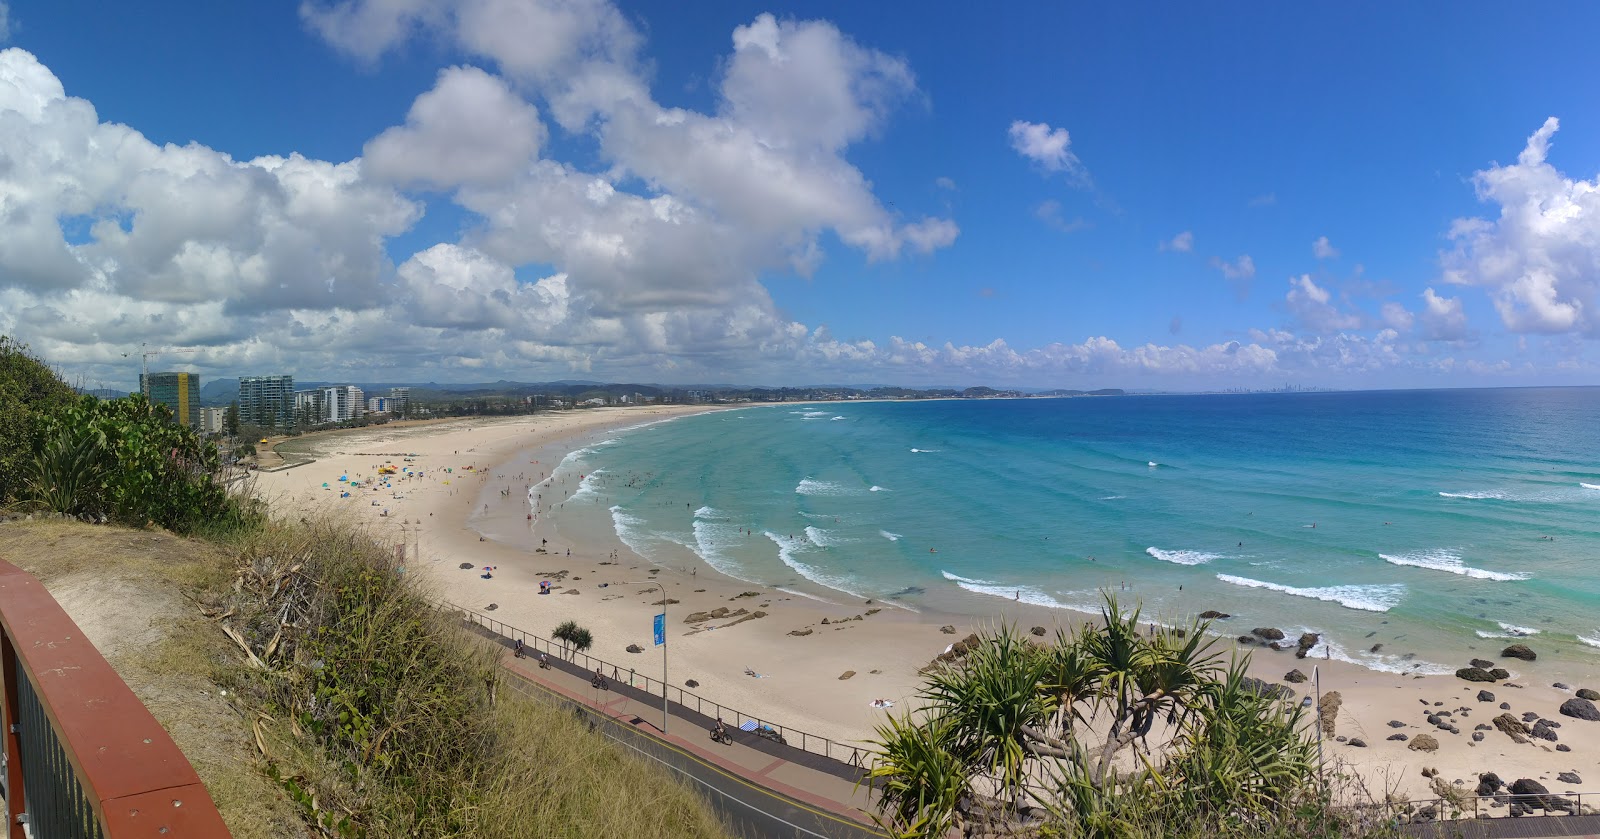 Foto de Kirra Beach - lugar popular entre los conocedores del relax